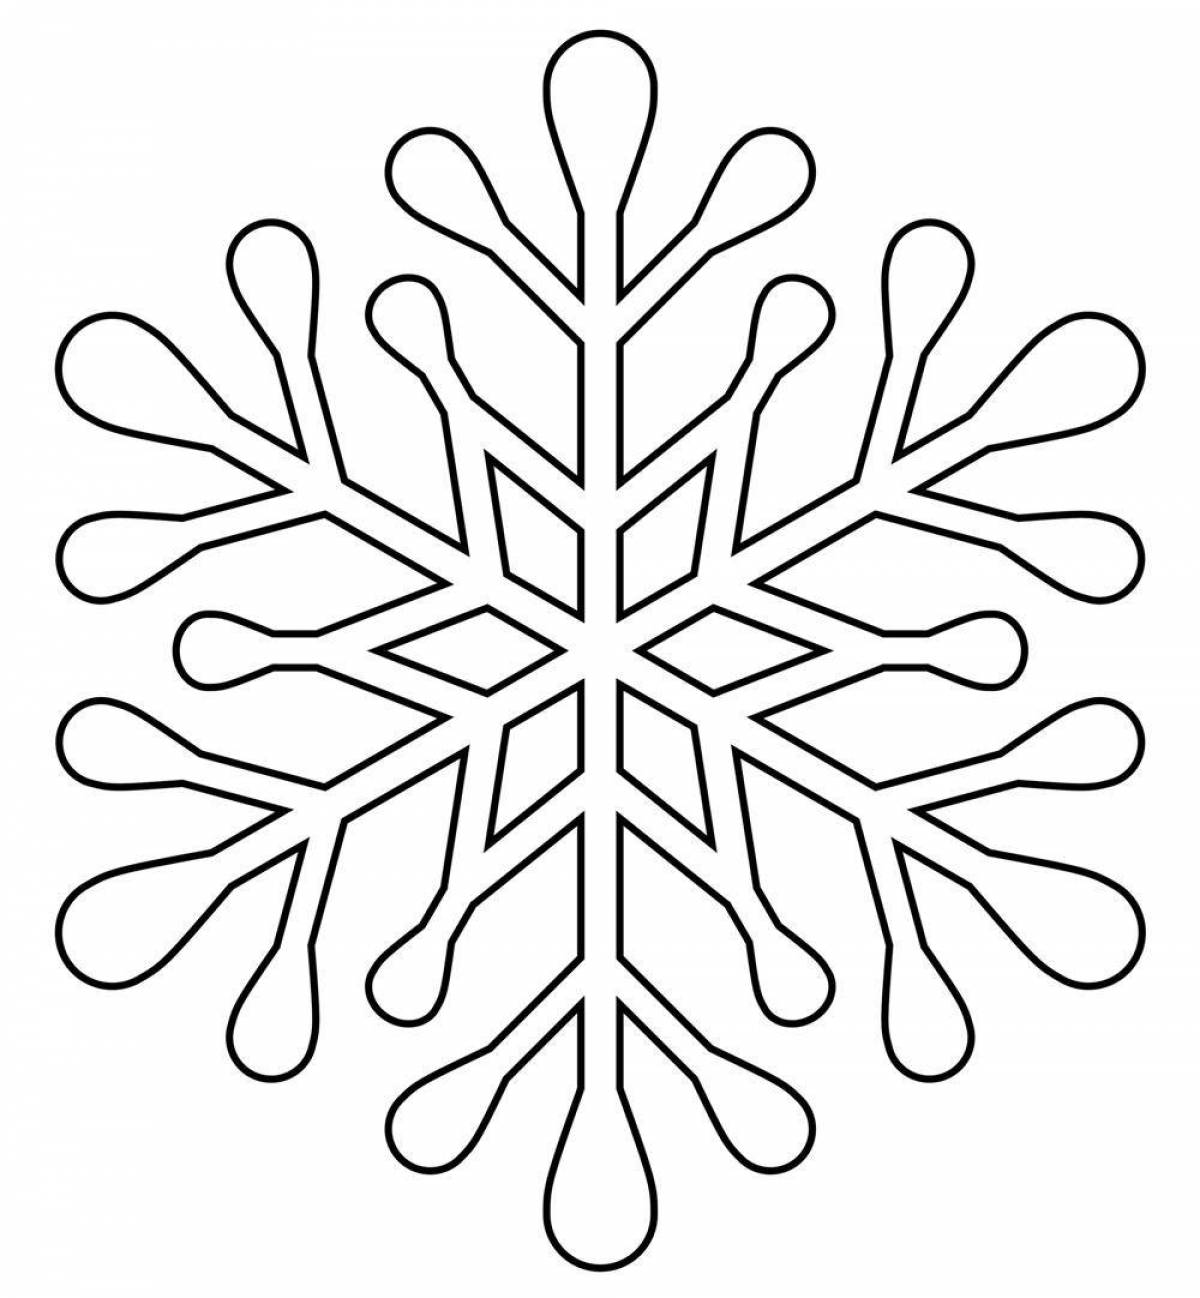 Fantastic snowflake coloring book for kids